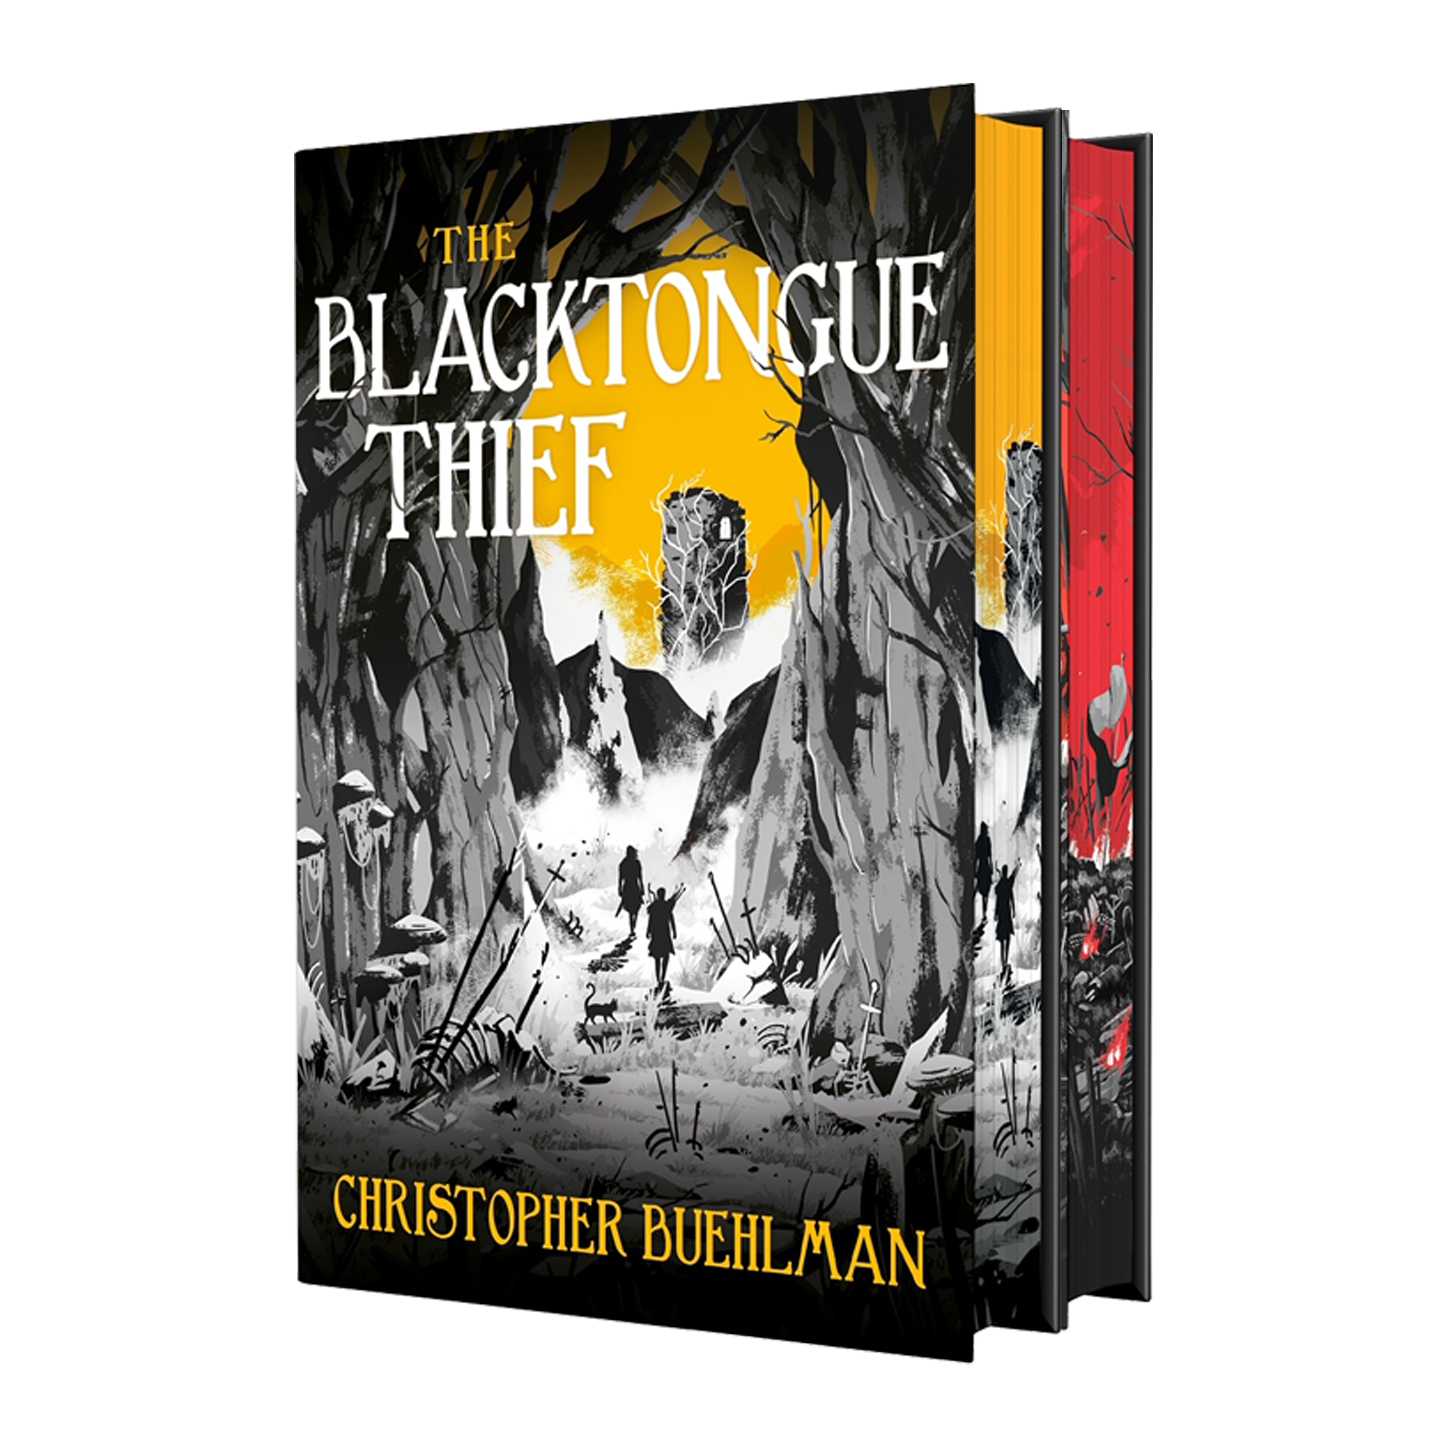 The Blacktongue Series